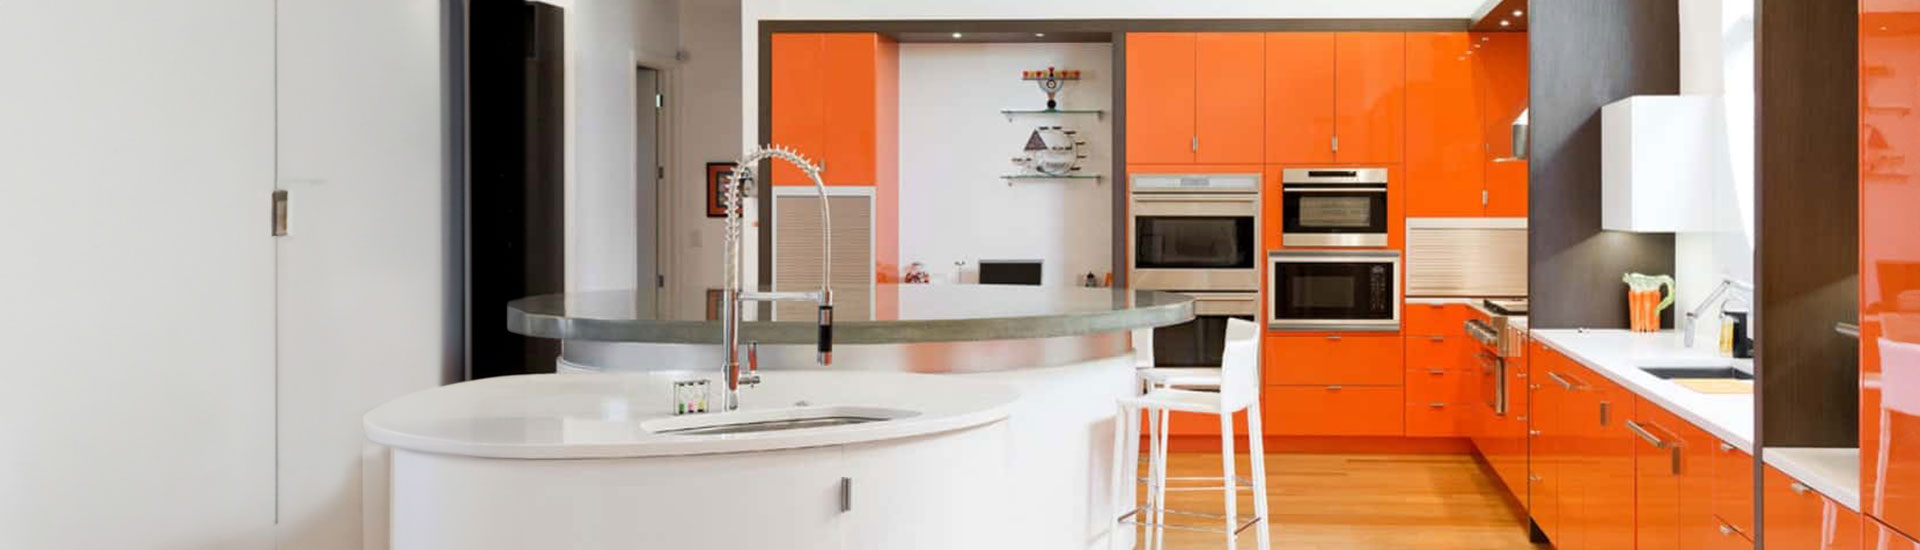 Orange Kitchen Cabinet Wraps